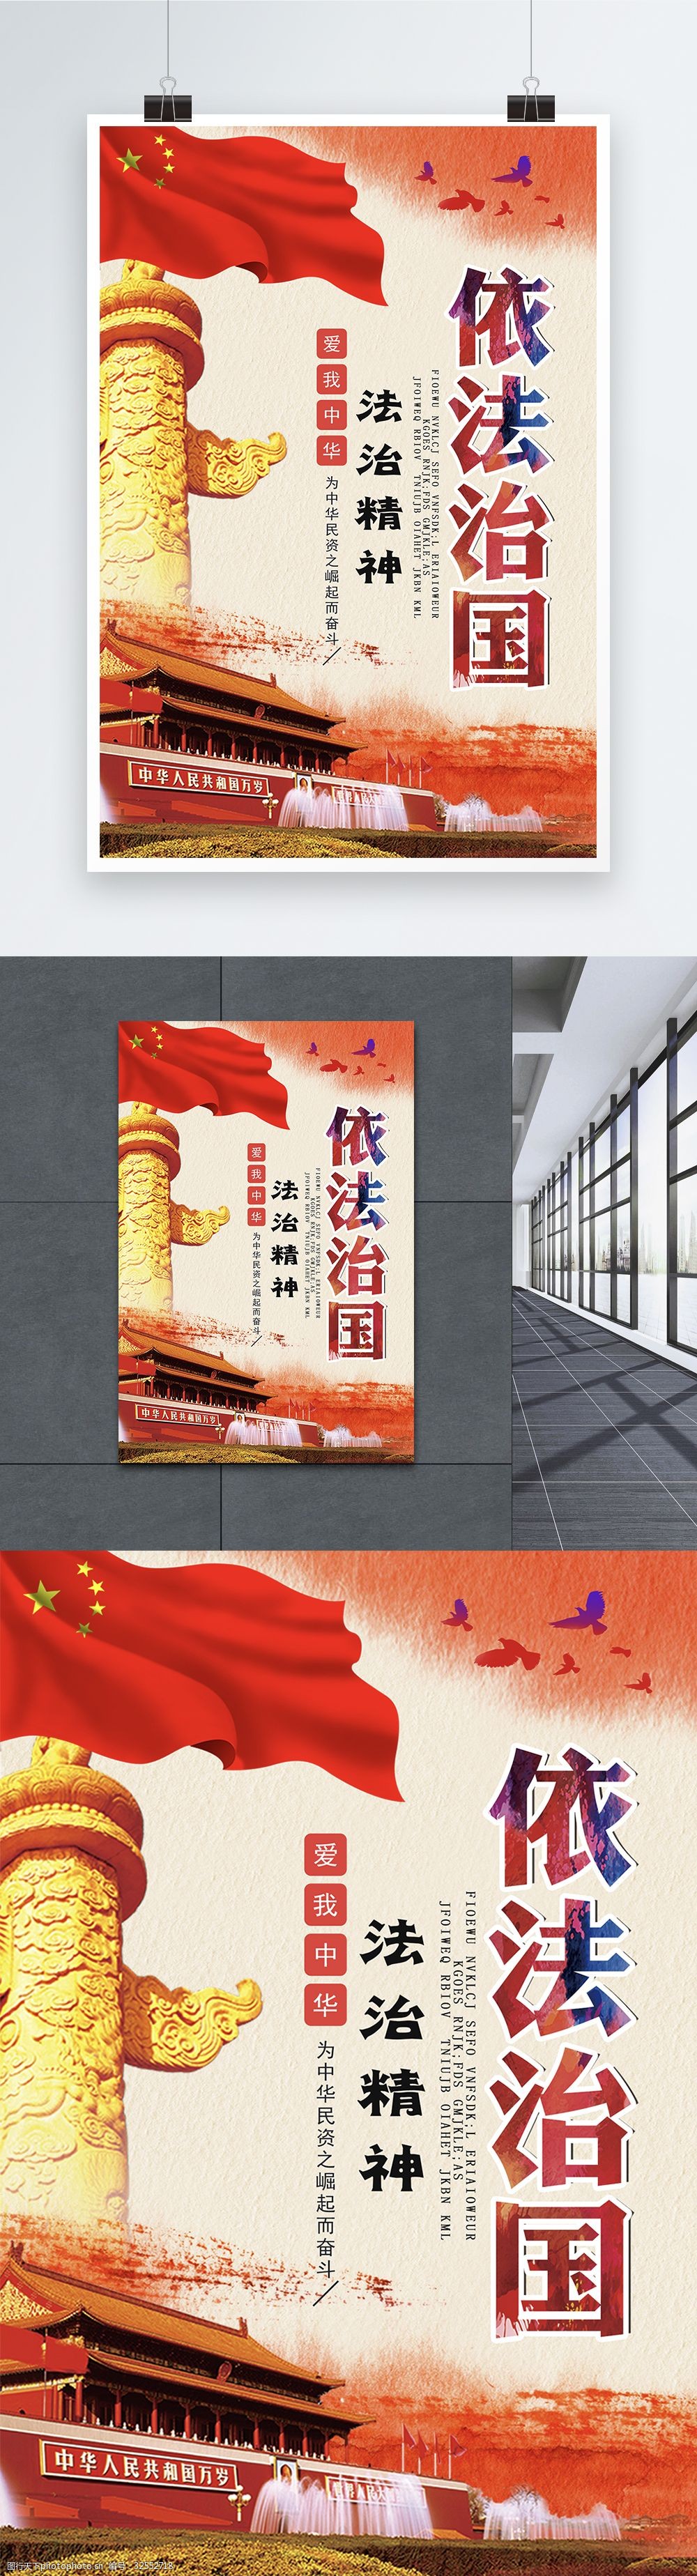 关键词:依法治国红色党建海报 法治中国 党建 法制 社会 海报 中国风